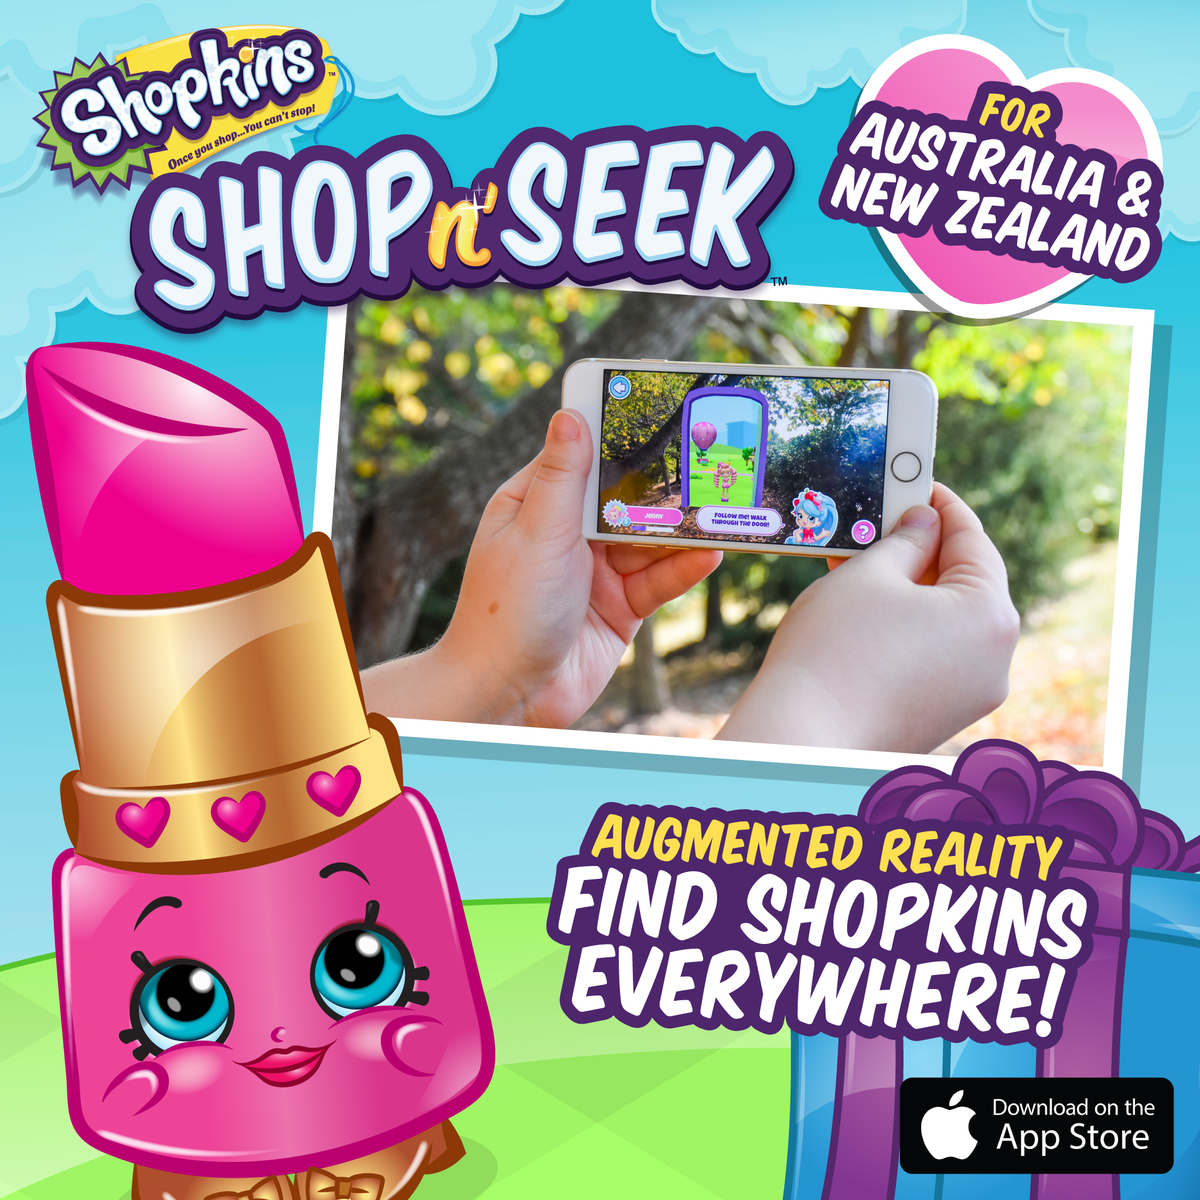 Shopkins Shop n' Seek for Australia and New Zealand